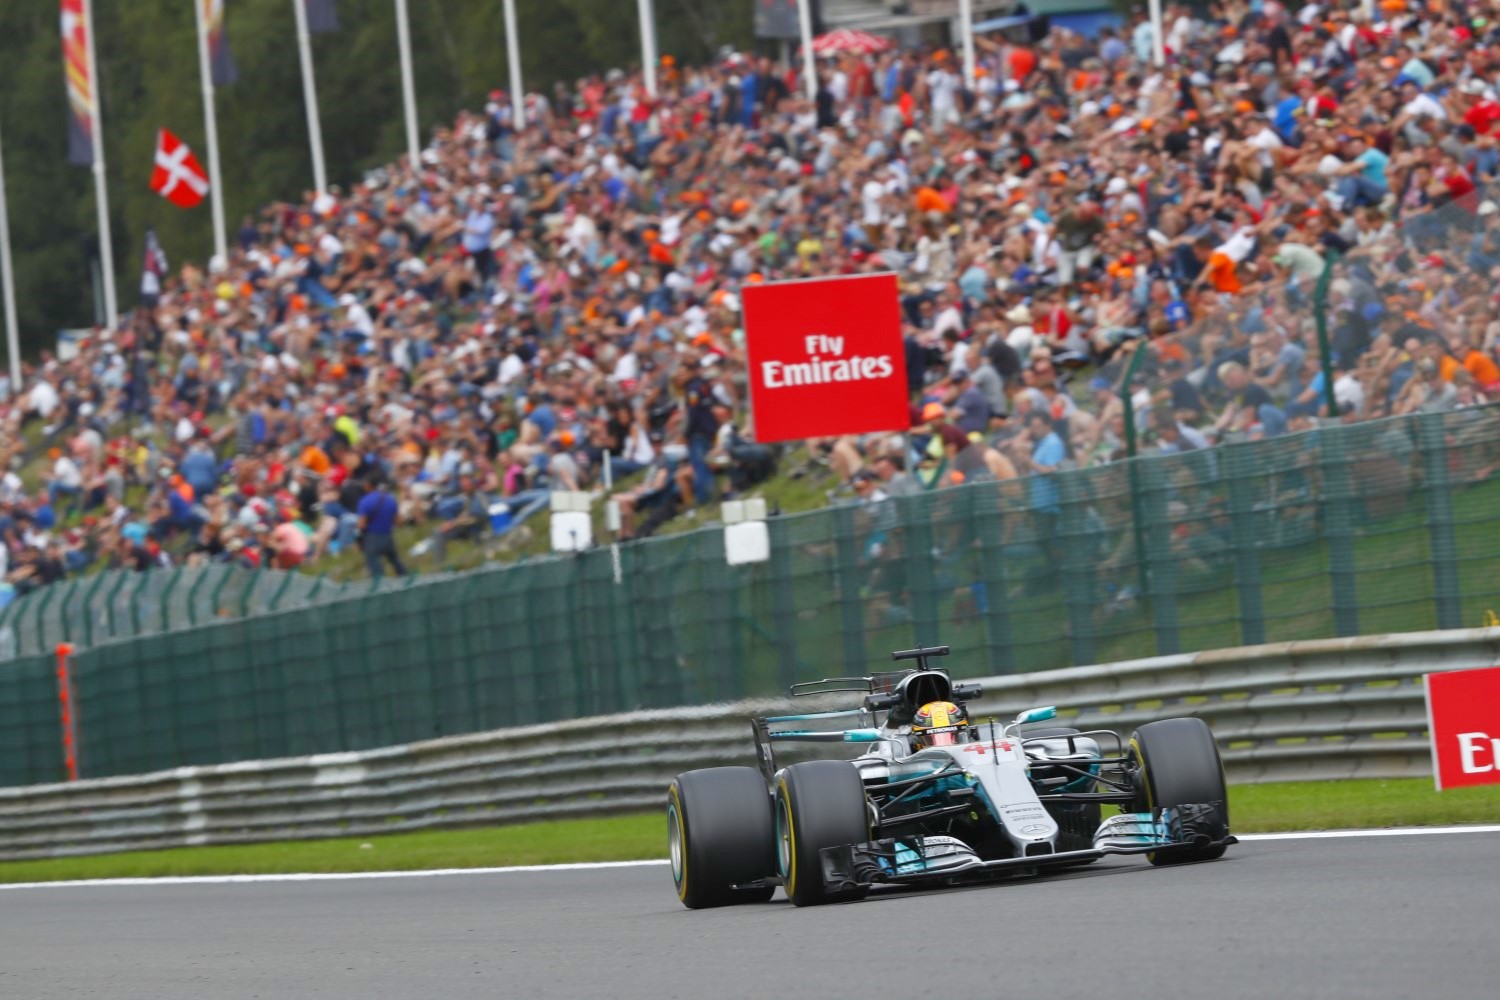 Hamilton expected to win pole